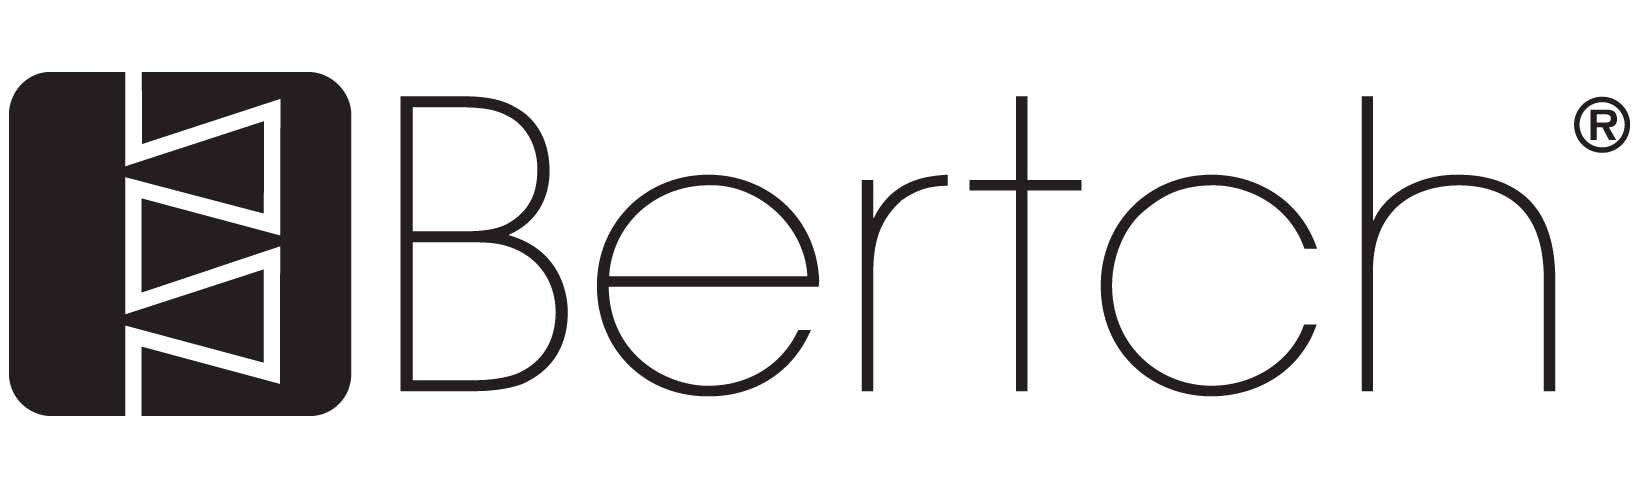 Bertch logo.jpg